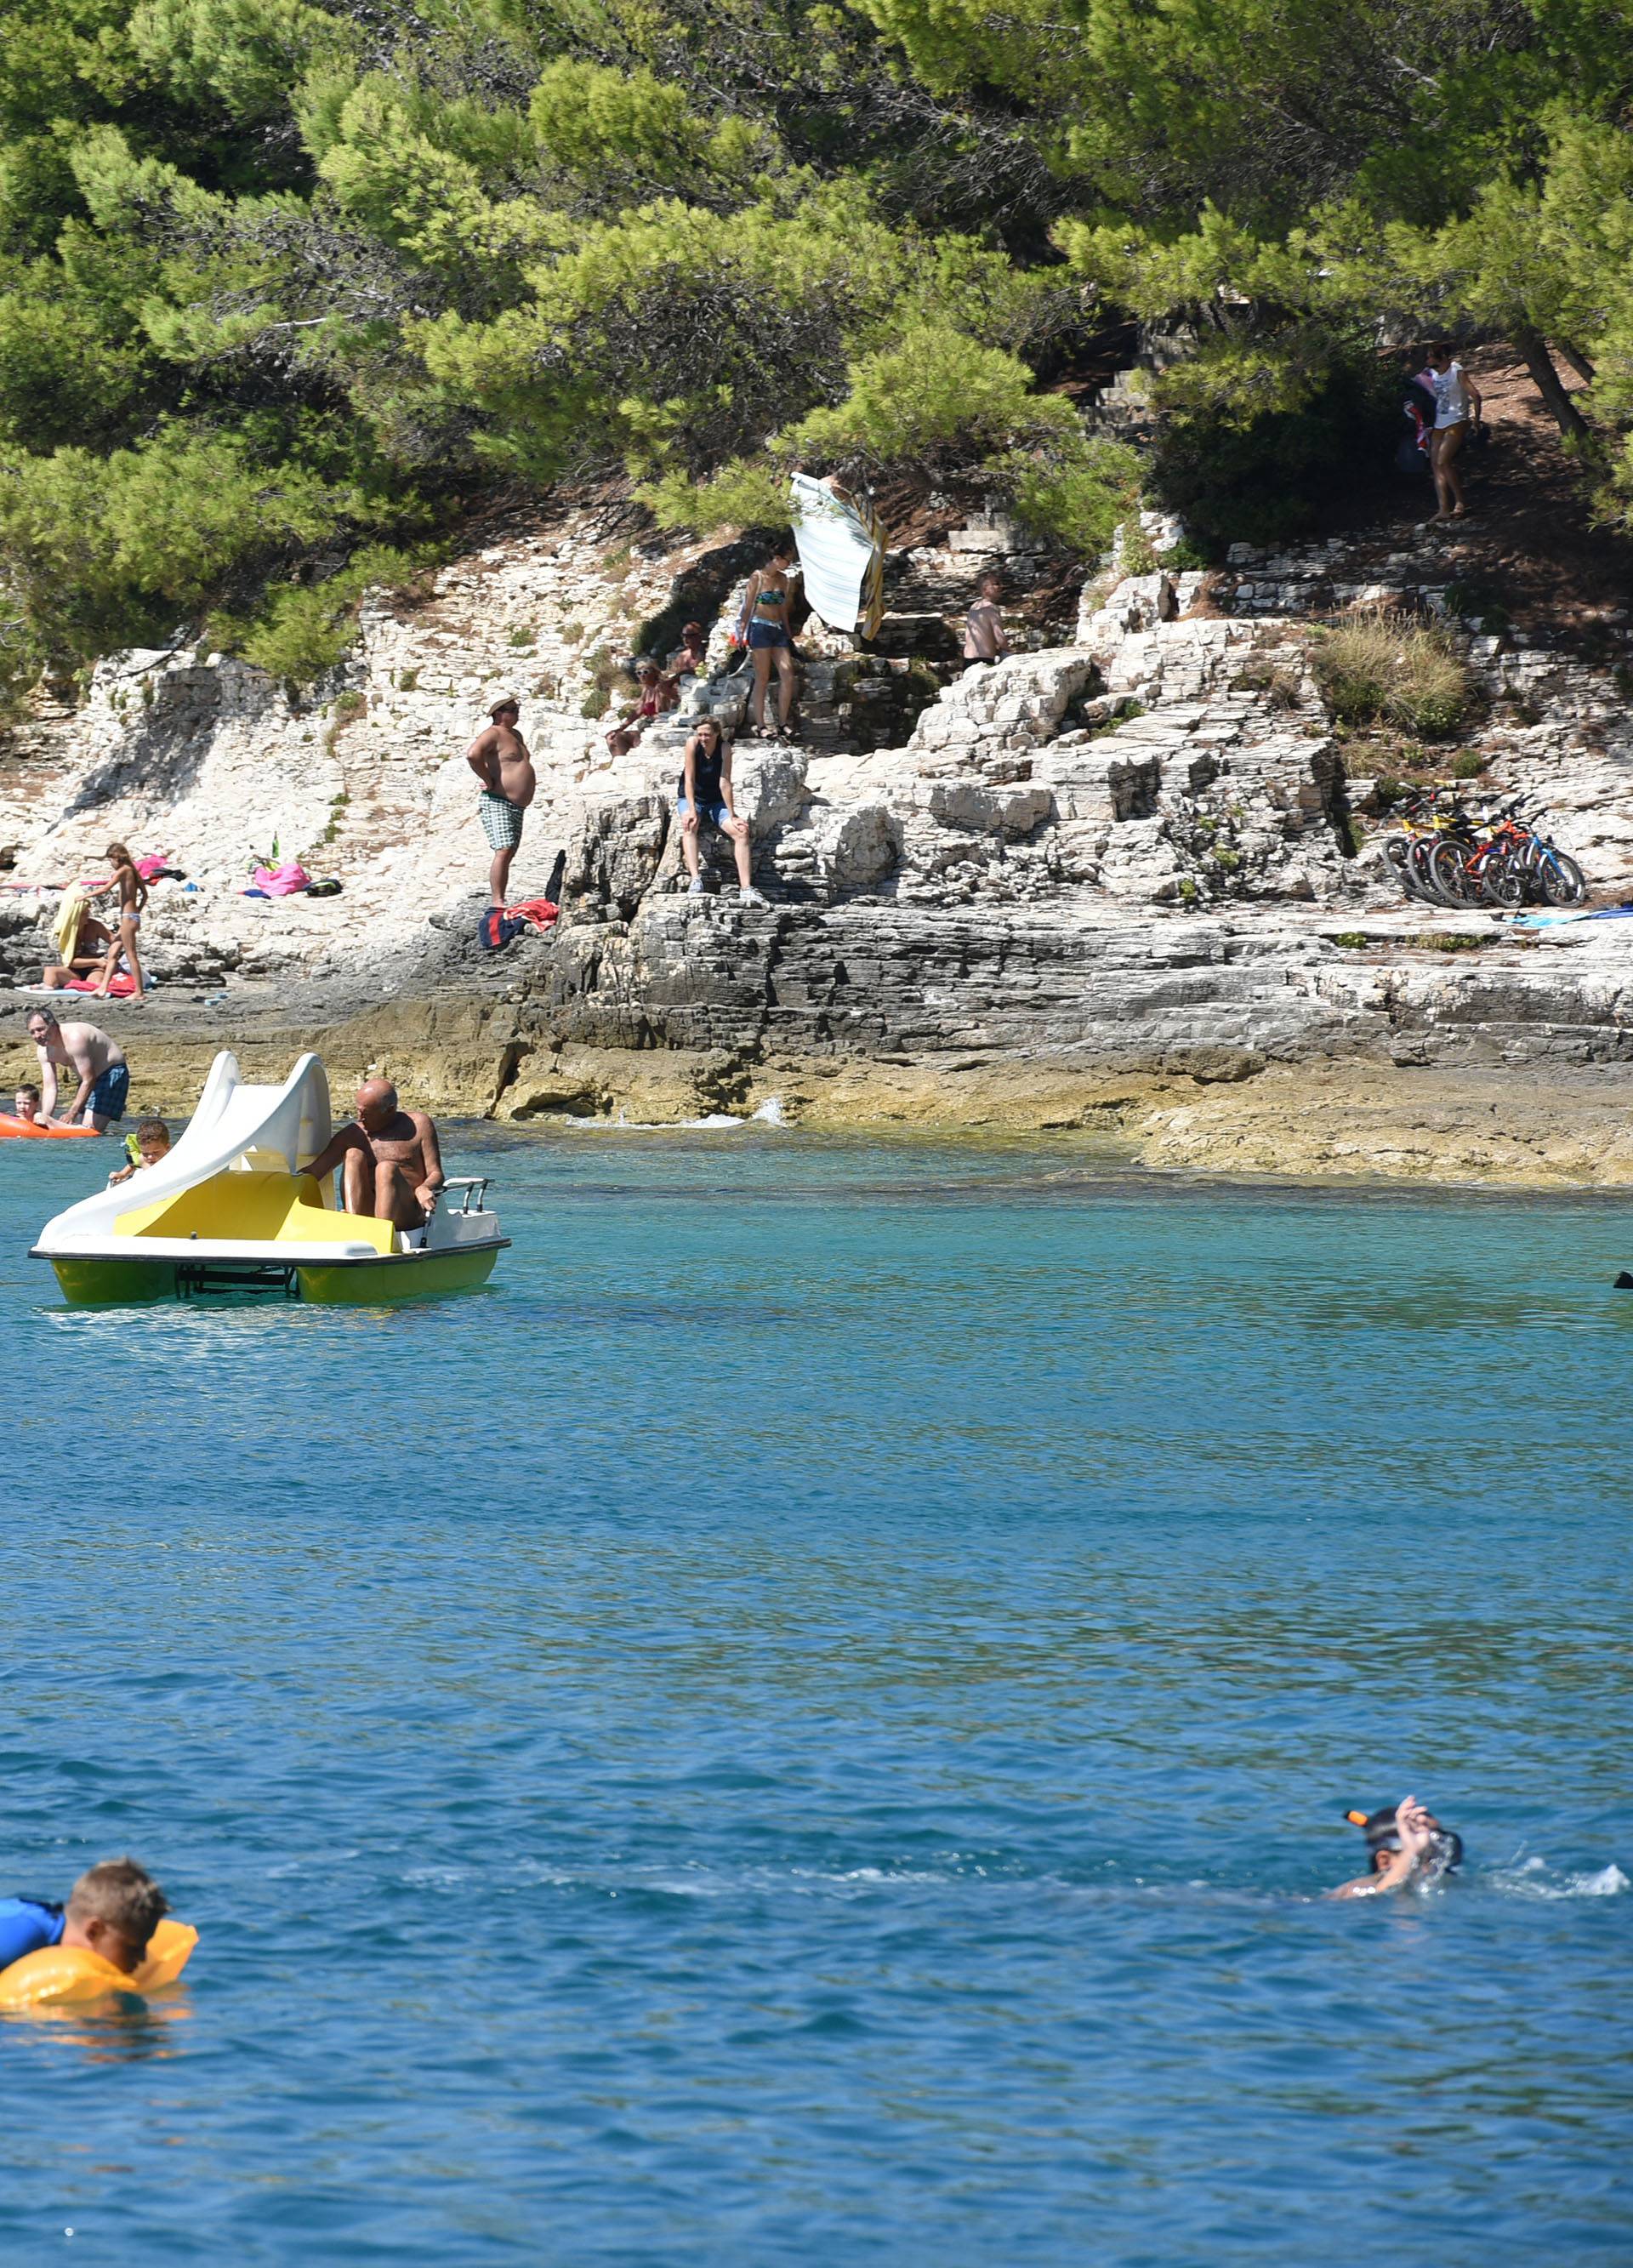 Invazija na Istru:  Nakon kitova, kupače su prestrašile meduze